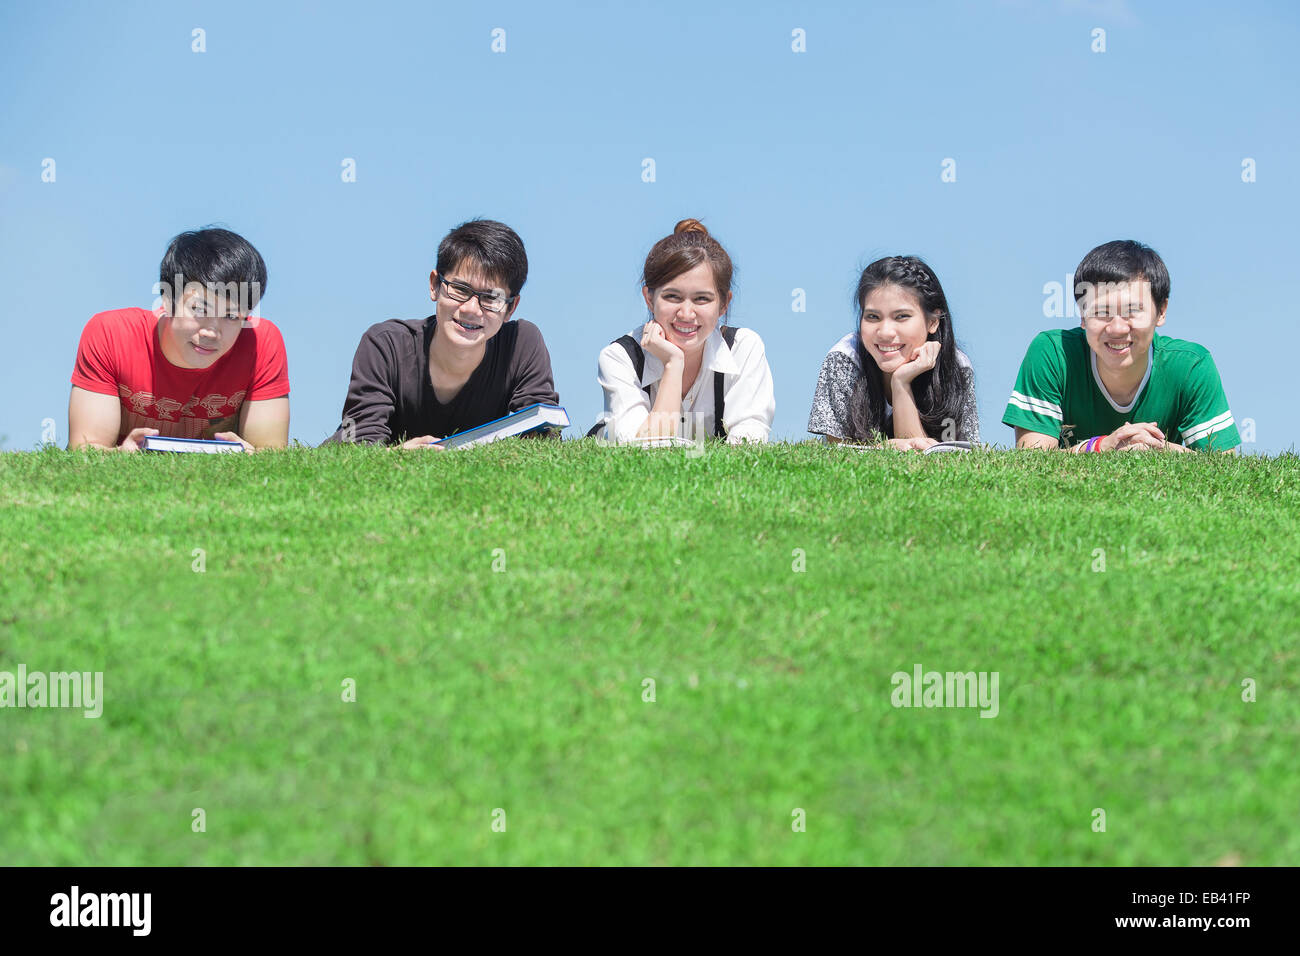 Gruppe von Studenten im Freien auf dem Boden liegend und lächelnd Stockfoto